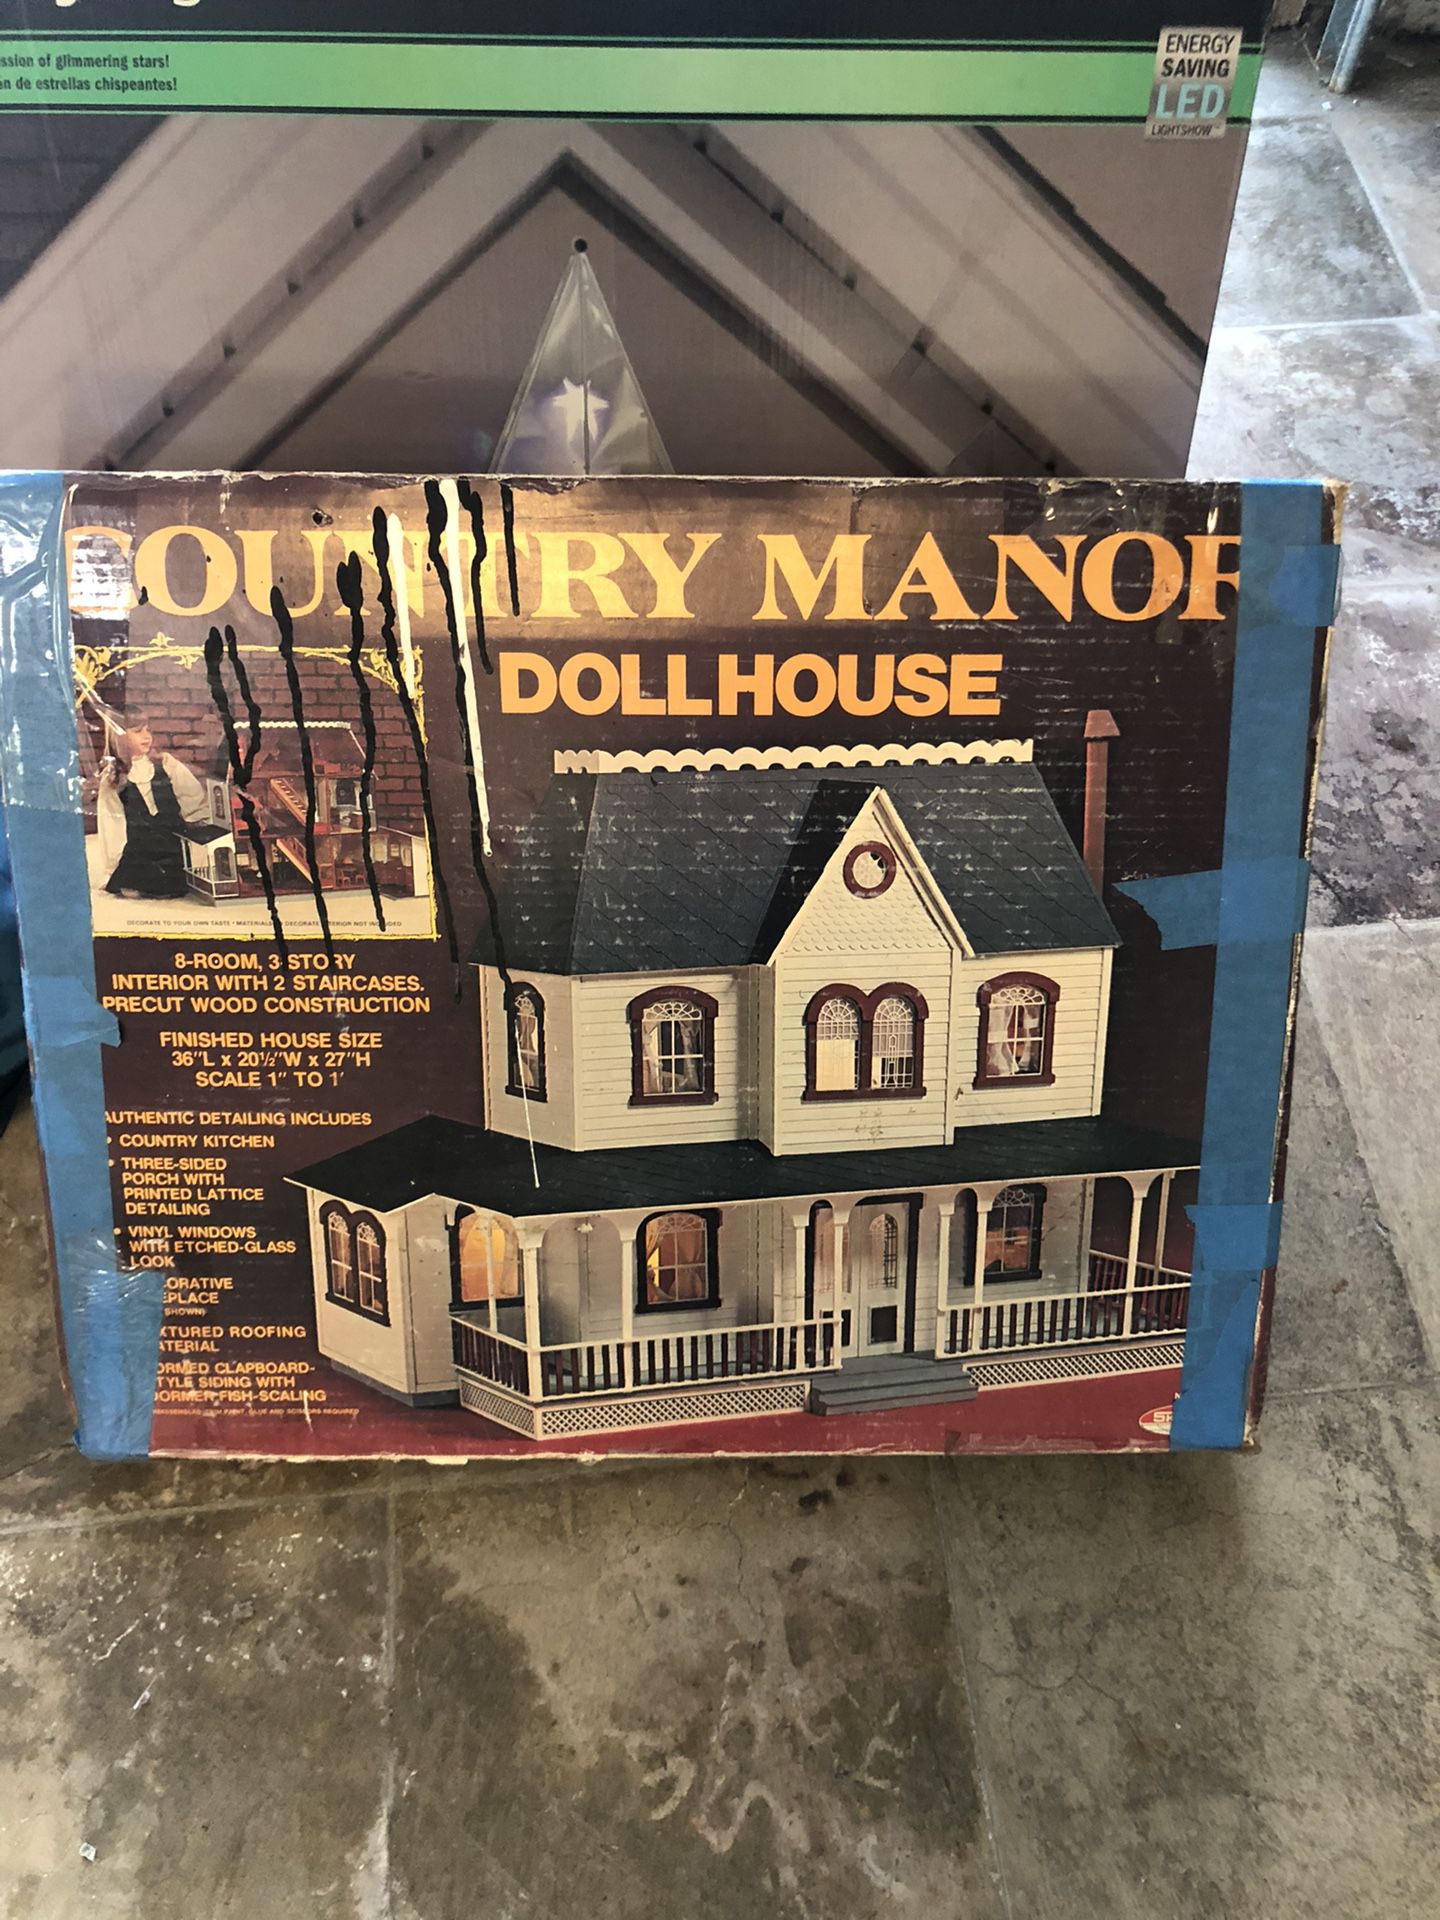 Dollhouse - antique?